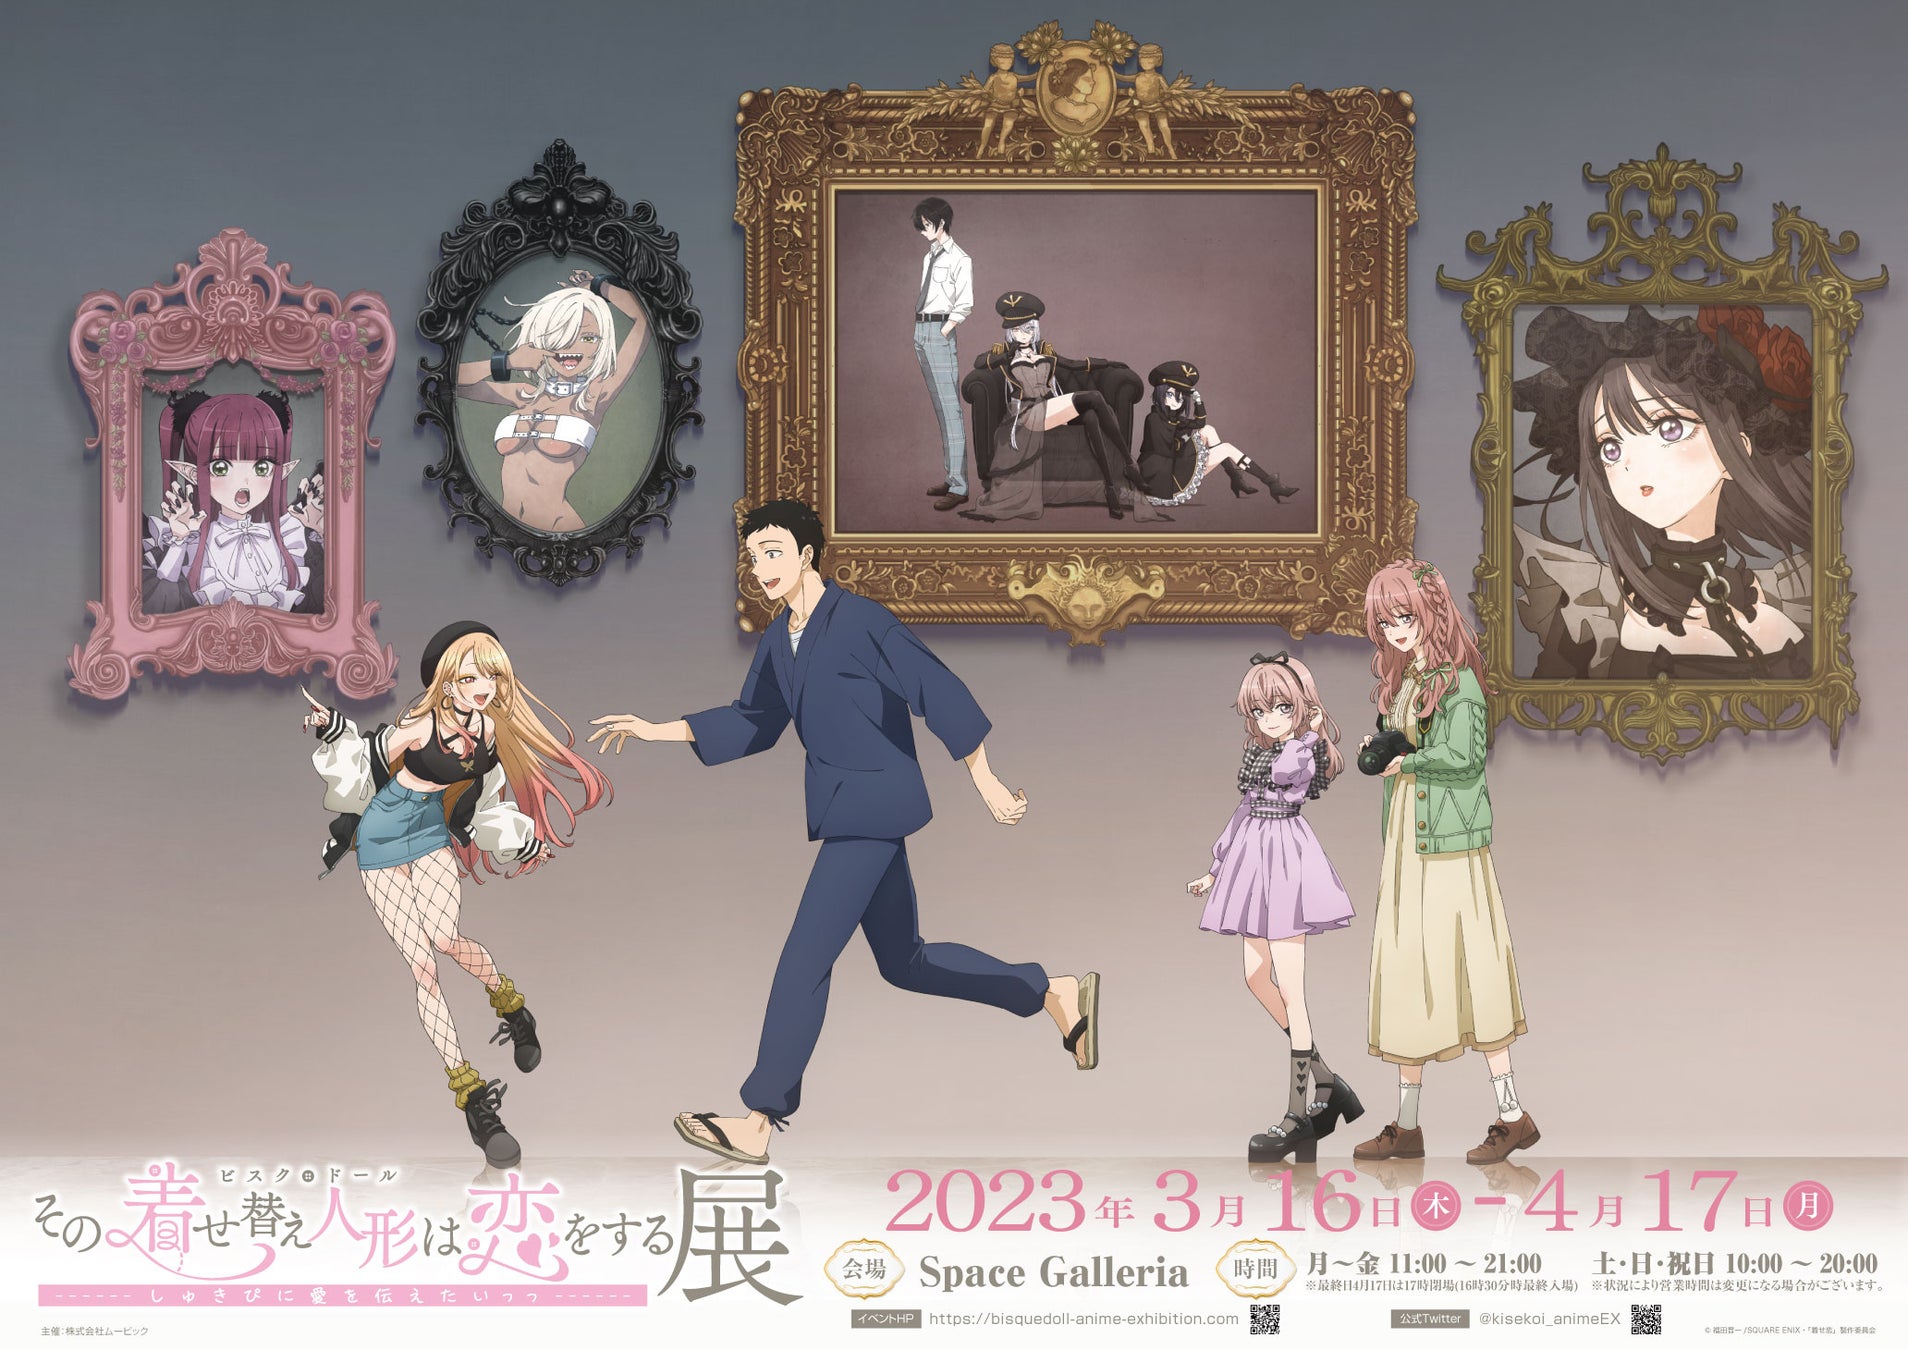 TVアニメ放送1周年記念『その着せ替え人形は恋をする展』4月17日までアニメイト池袋本店8F Space Galleriaで開催中！